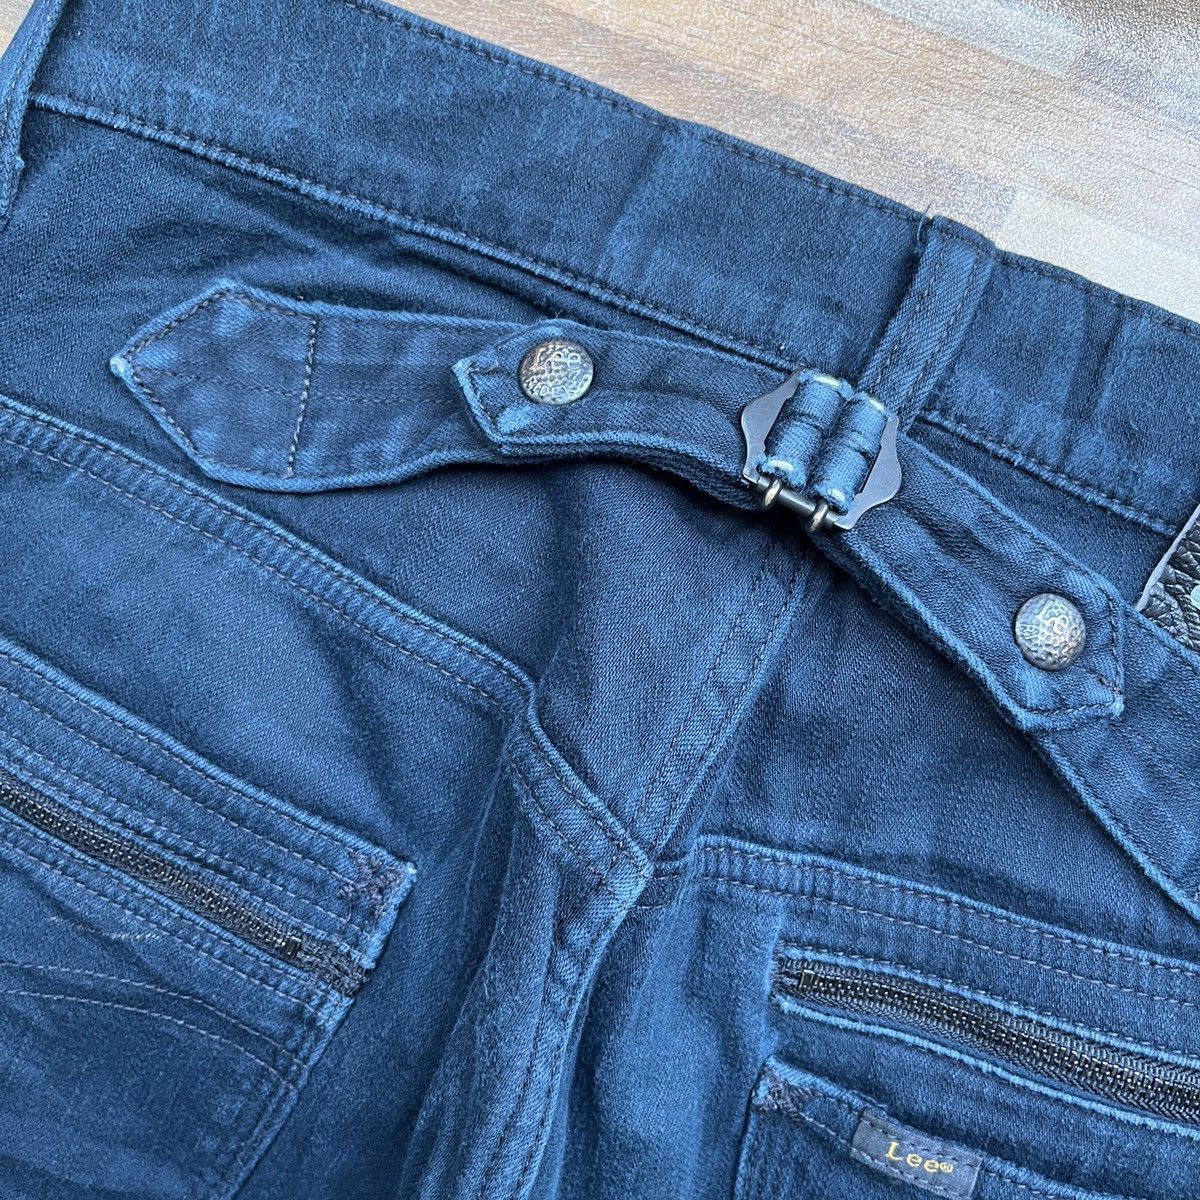 Multipocket Lee Rider Denim Jeans Vintage - 16